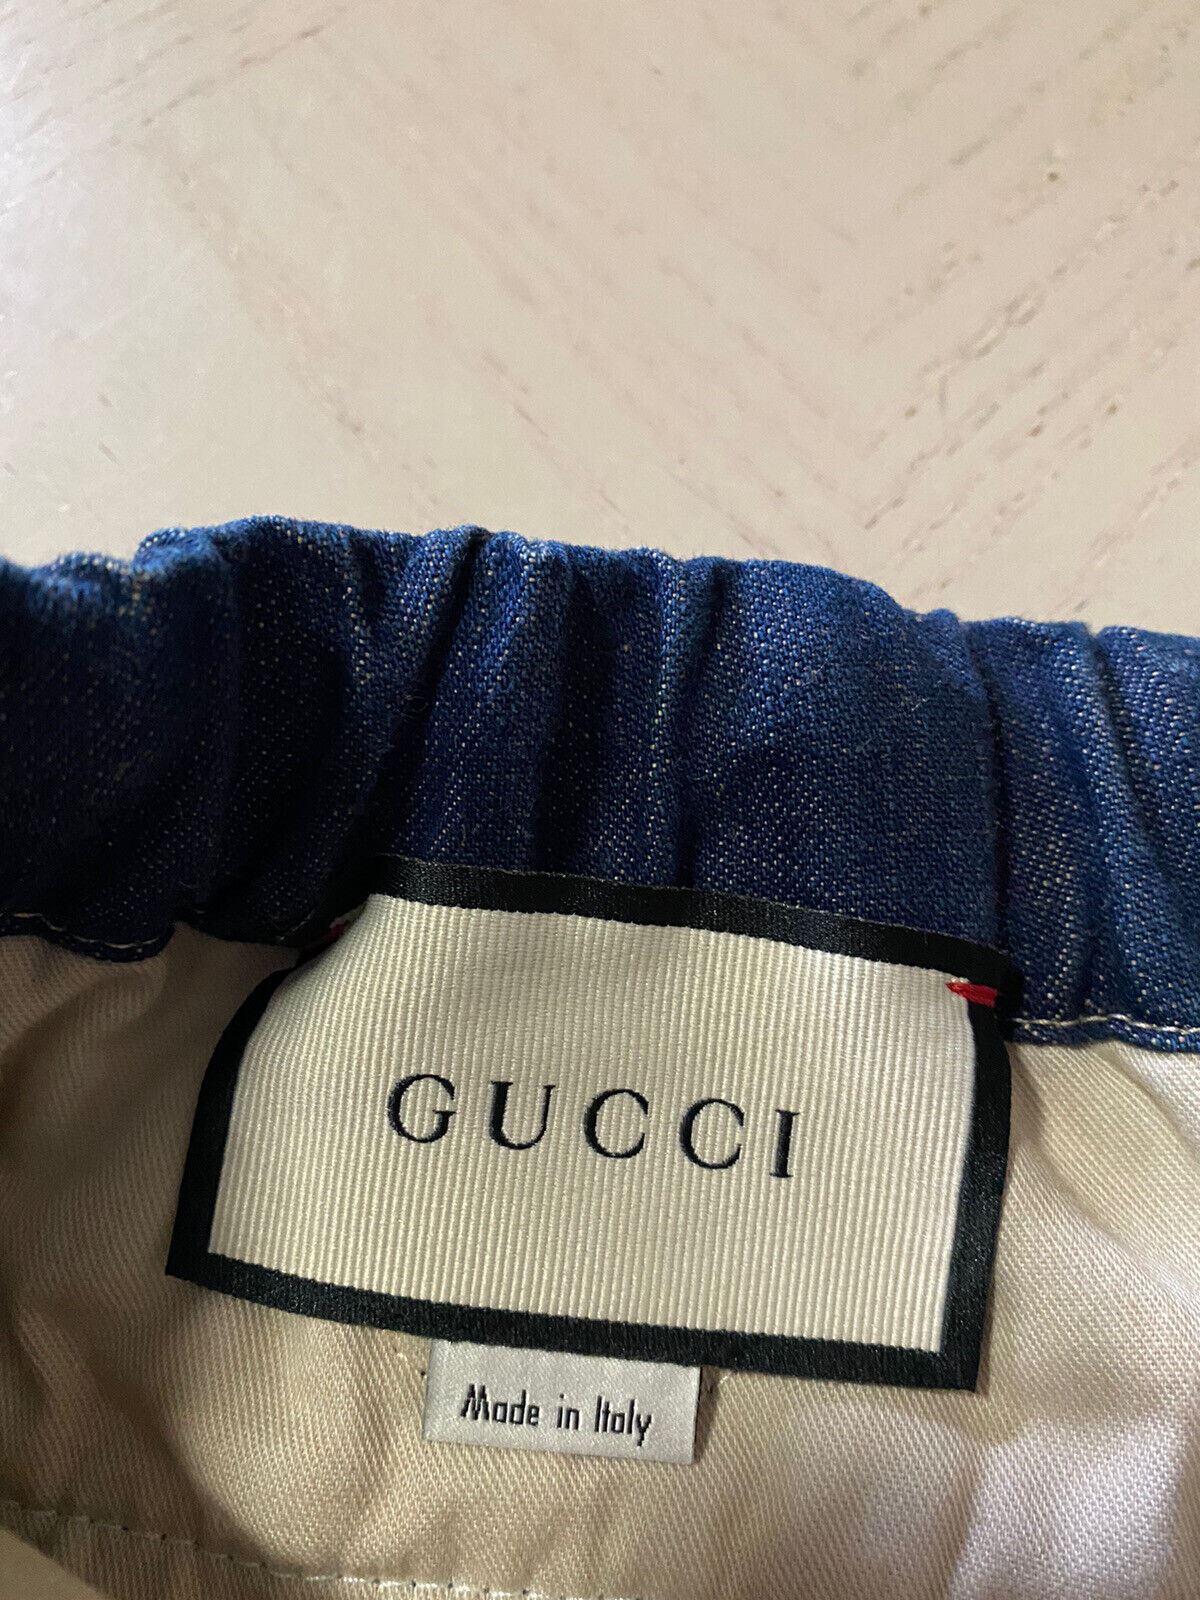 Neu mit Etikett: 1.250 $ Gucci Herren-Shorts aus gewaschenem Denim mit GG-Leder, DK-Blau, 32 US/48 Eu